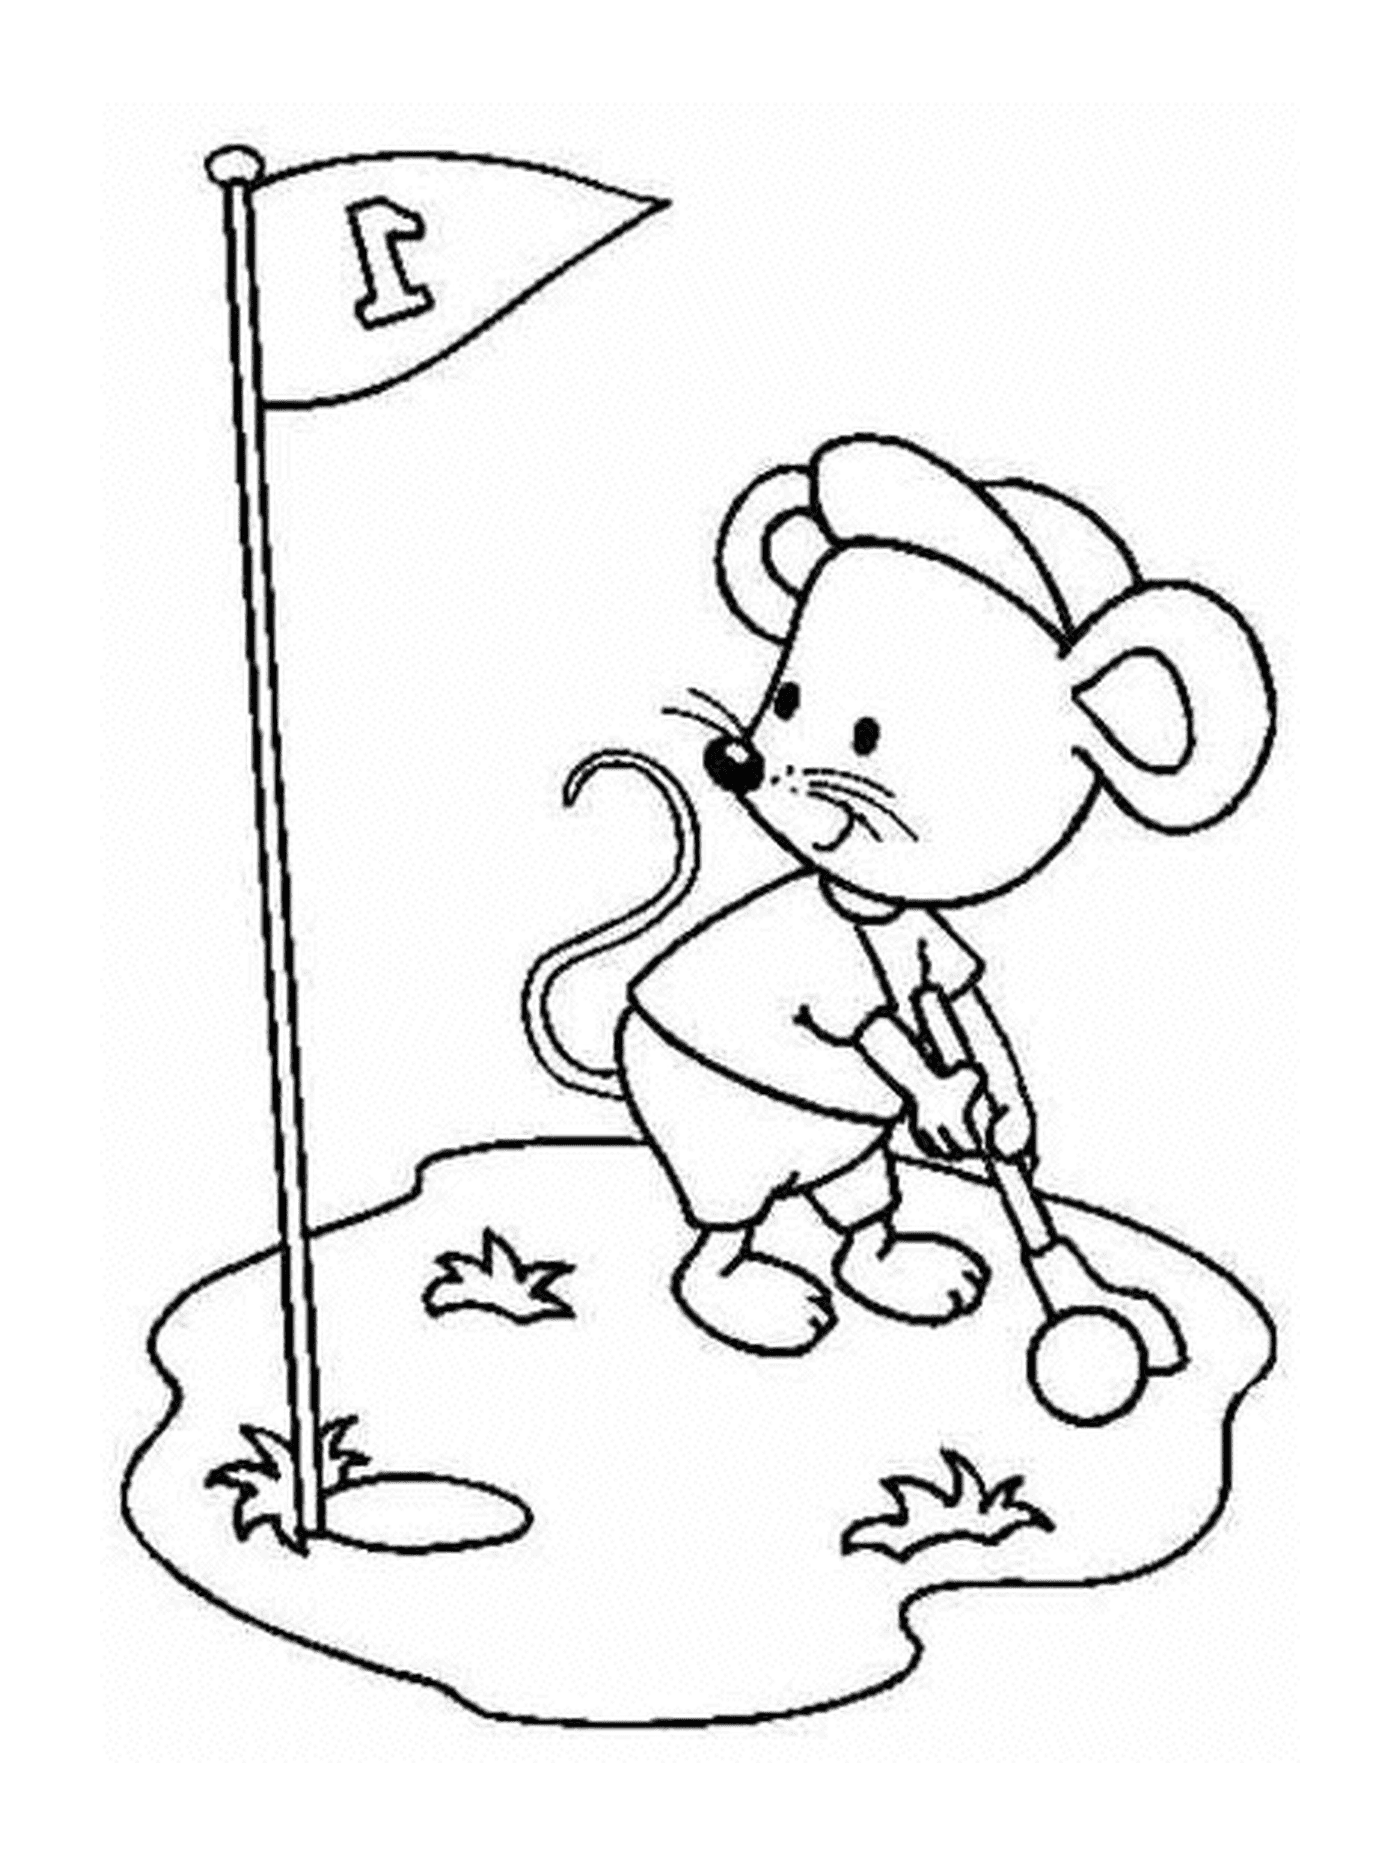   Une souris jouant au golf 